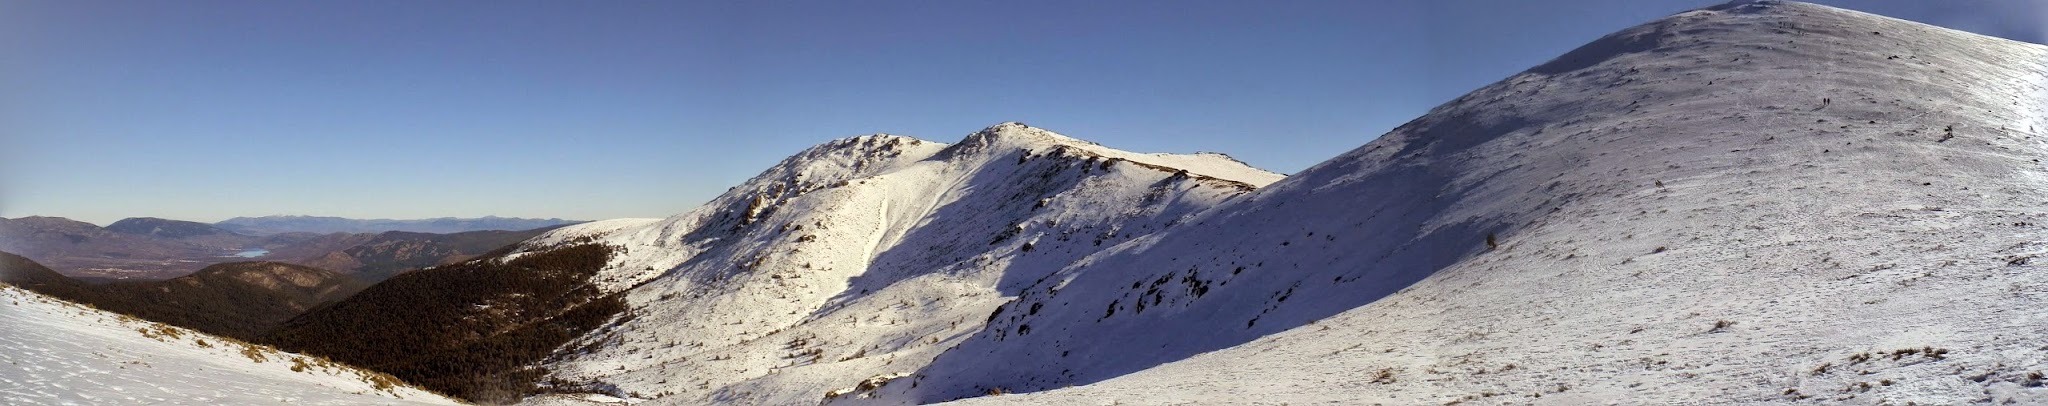 Cerro de Valdemartín